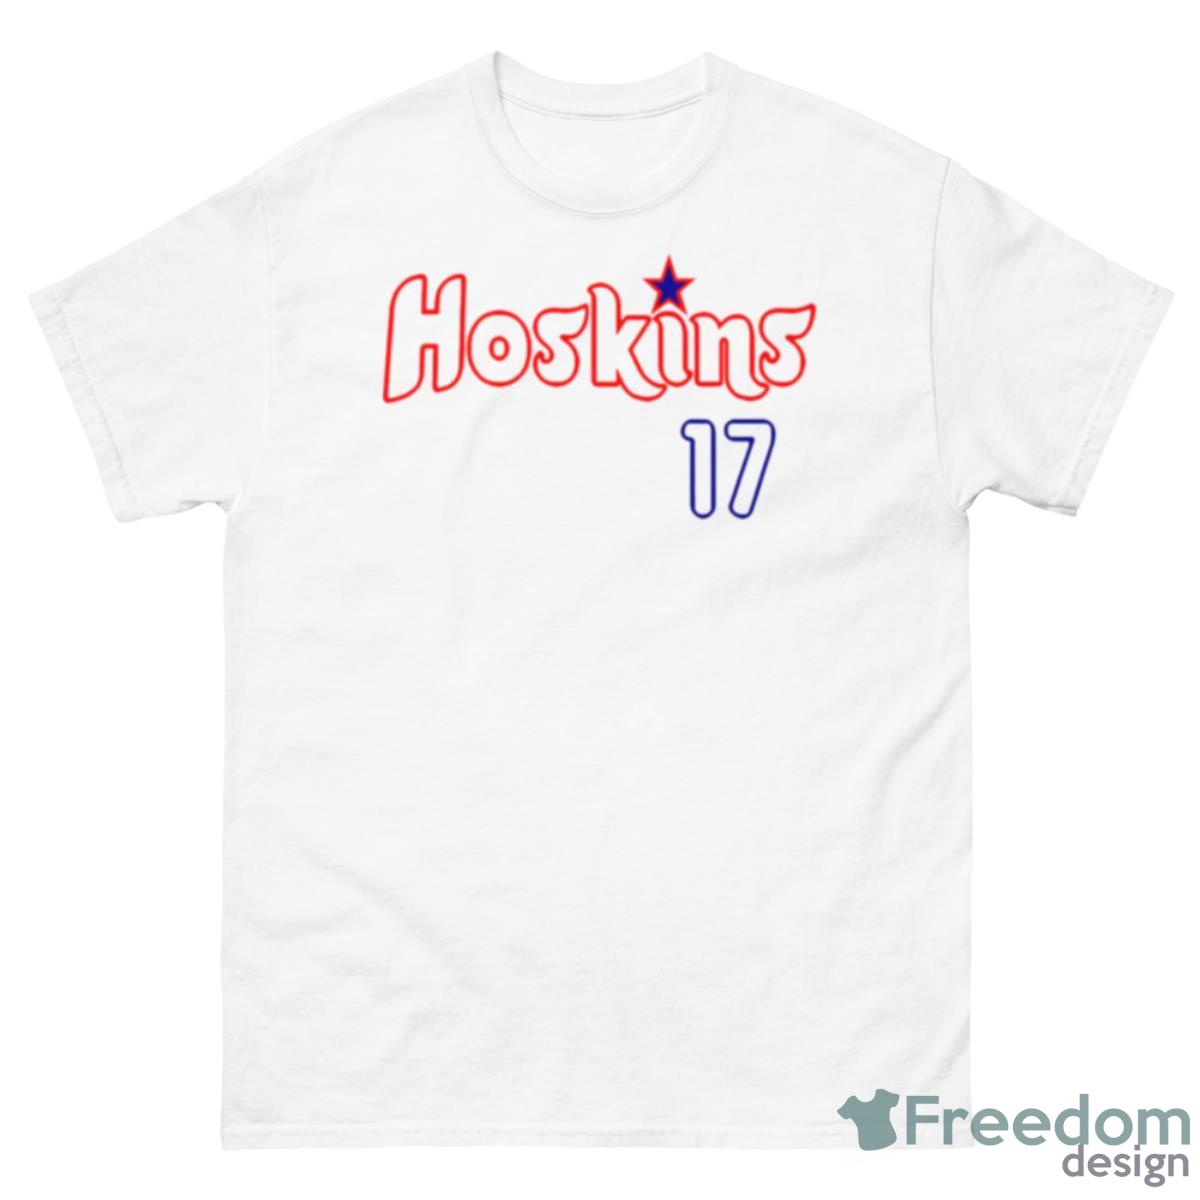 Hoskins 17 Philadelphia Phillies Shirt - Freedomdesign